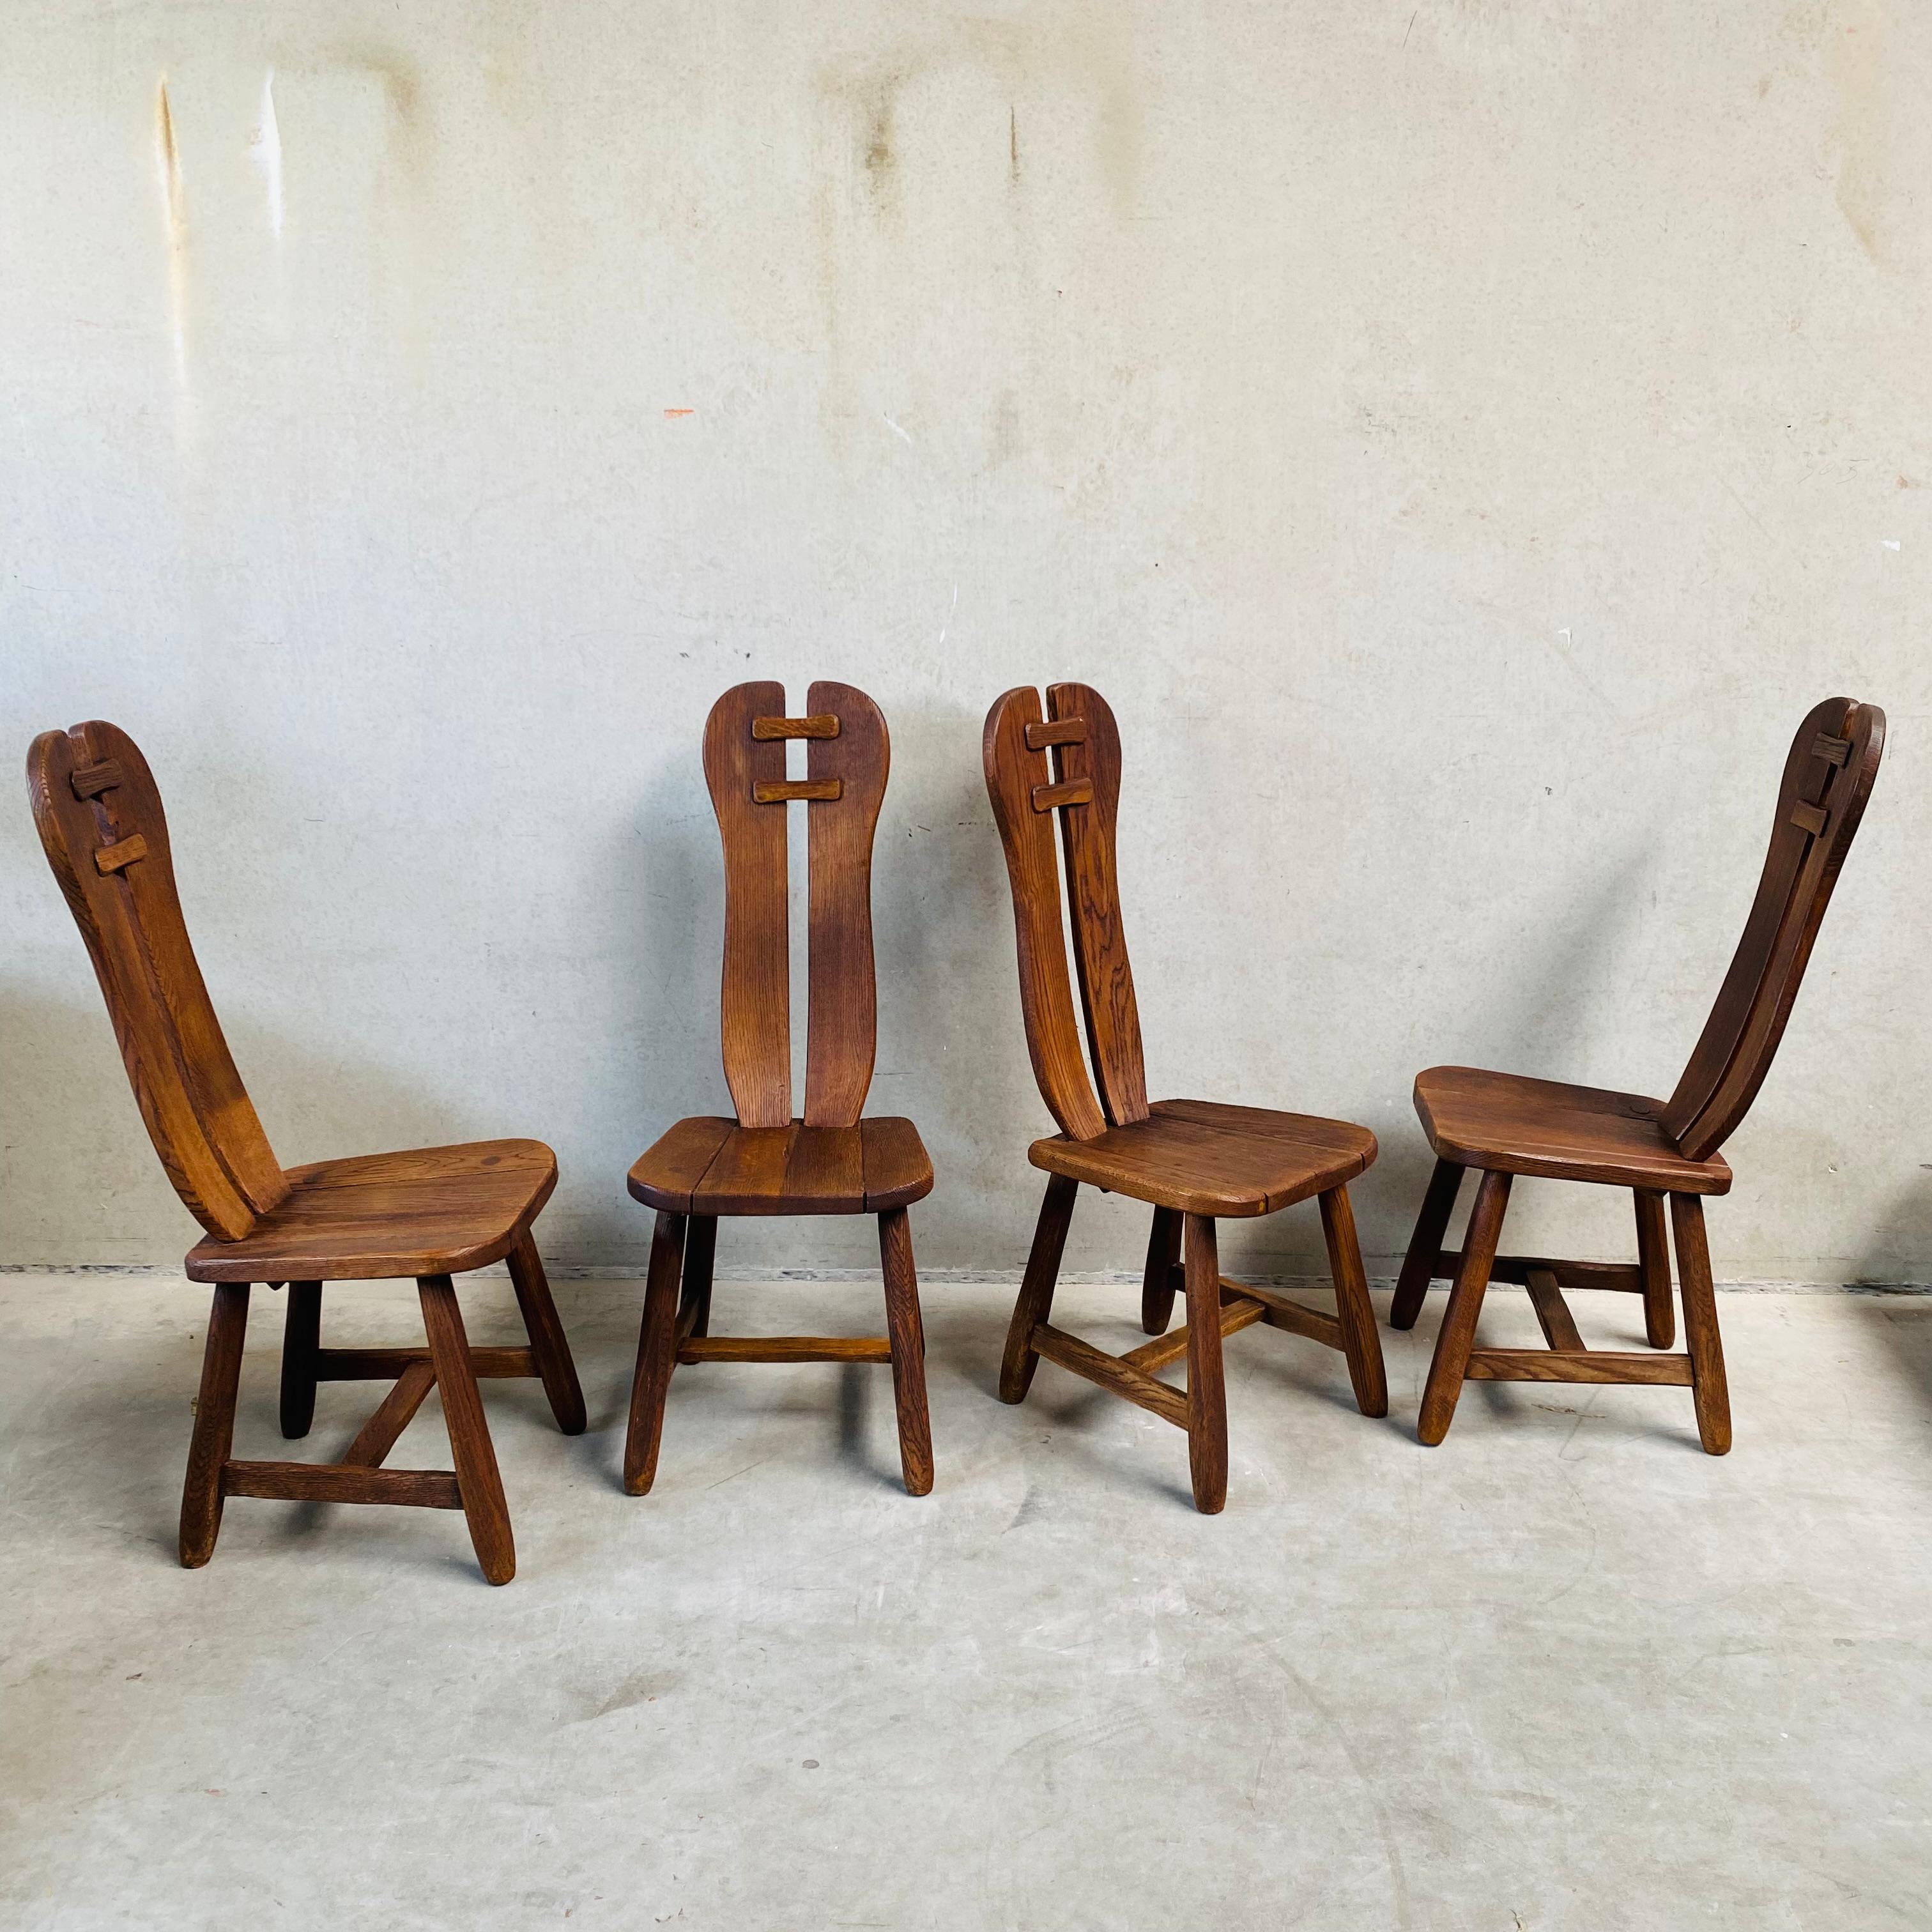 Sind Sie auf der Suche nach einzigartigen und stilvollen Esszimmerstühlen, die Ihrem Zuhause Charakter verleihen? Die brutalistischen Art Dining Chairs aus massivem Eichenholz von Kunstmeubelen De Puydt wurden in den 1970er Jahren in Belgien